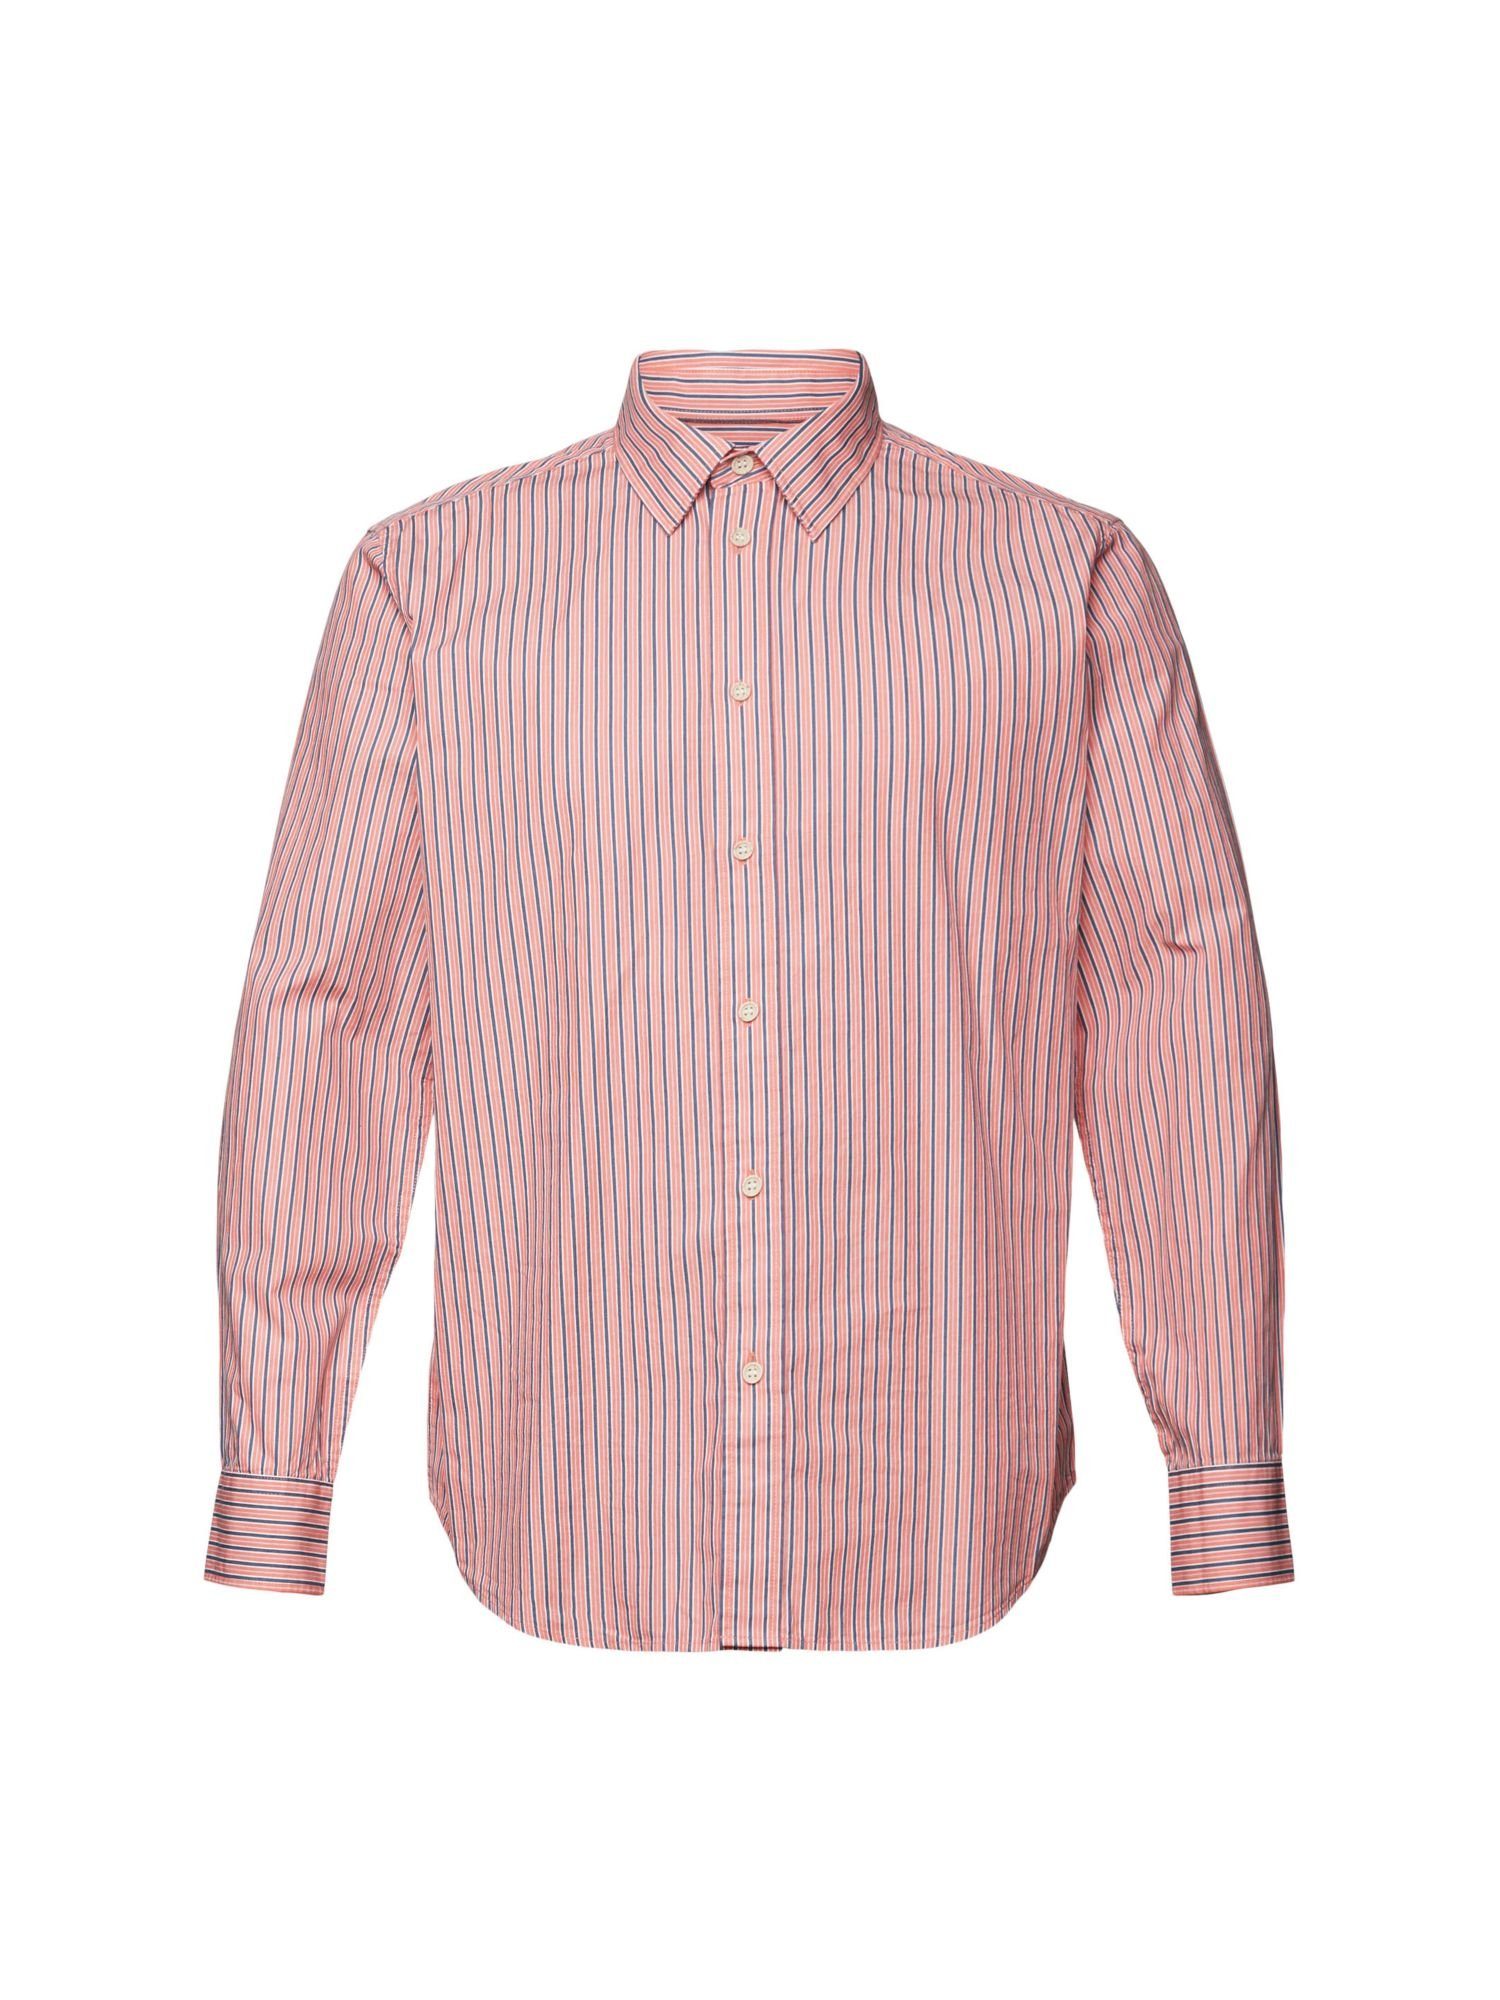 Esprit Langarmhemd Hemd mit Streifen, 100% Baumwolle CORAL RED